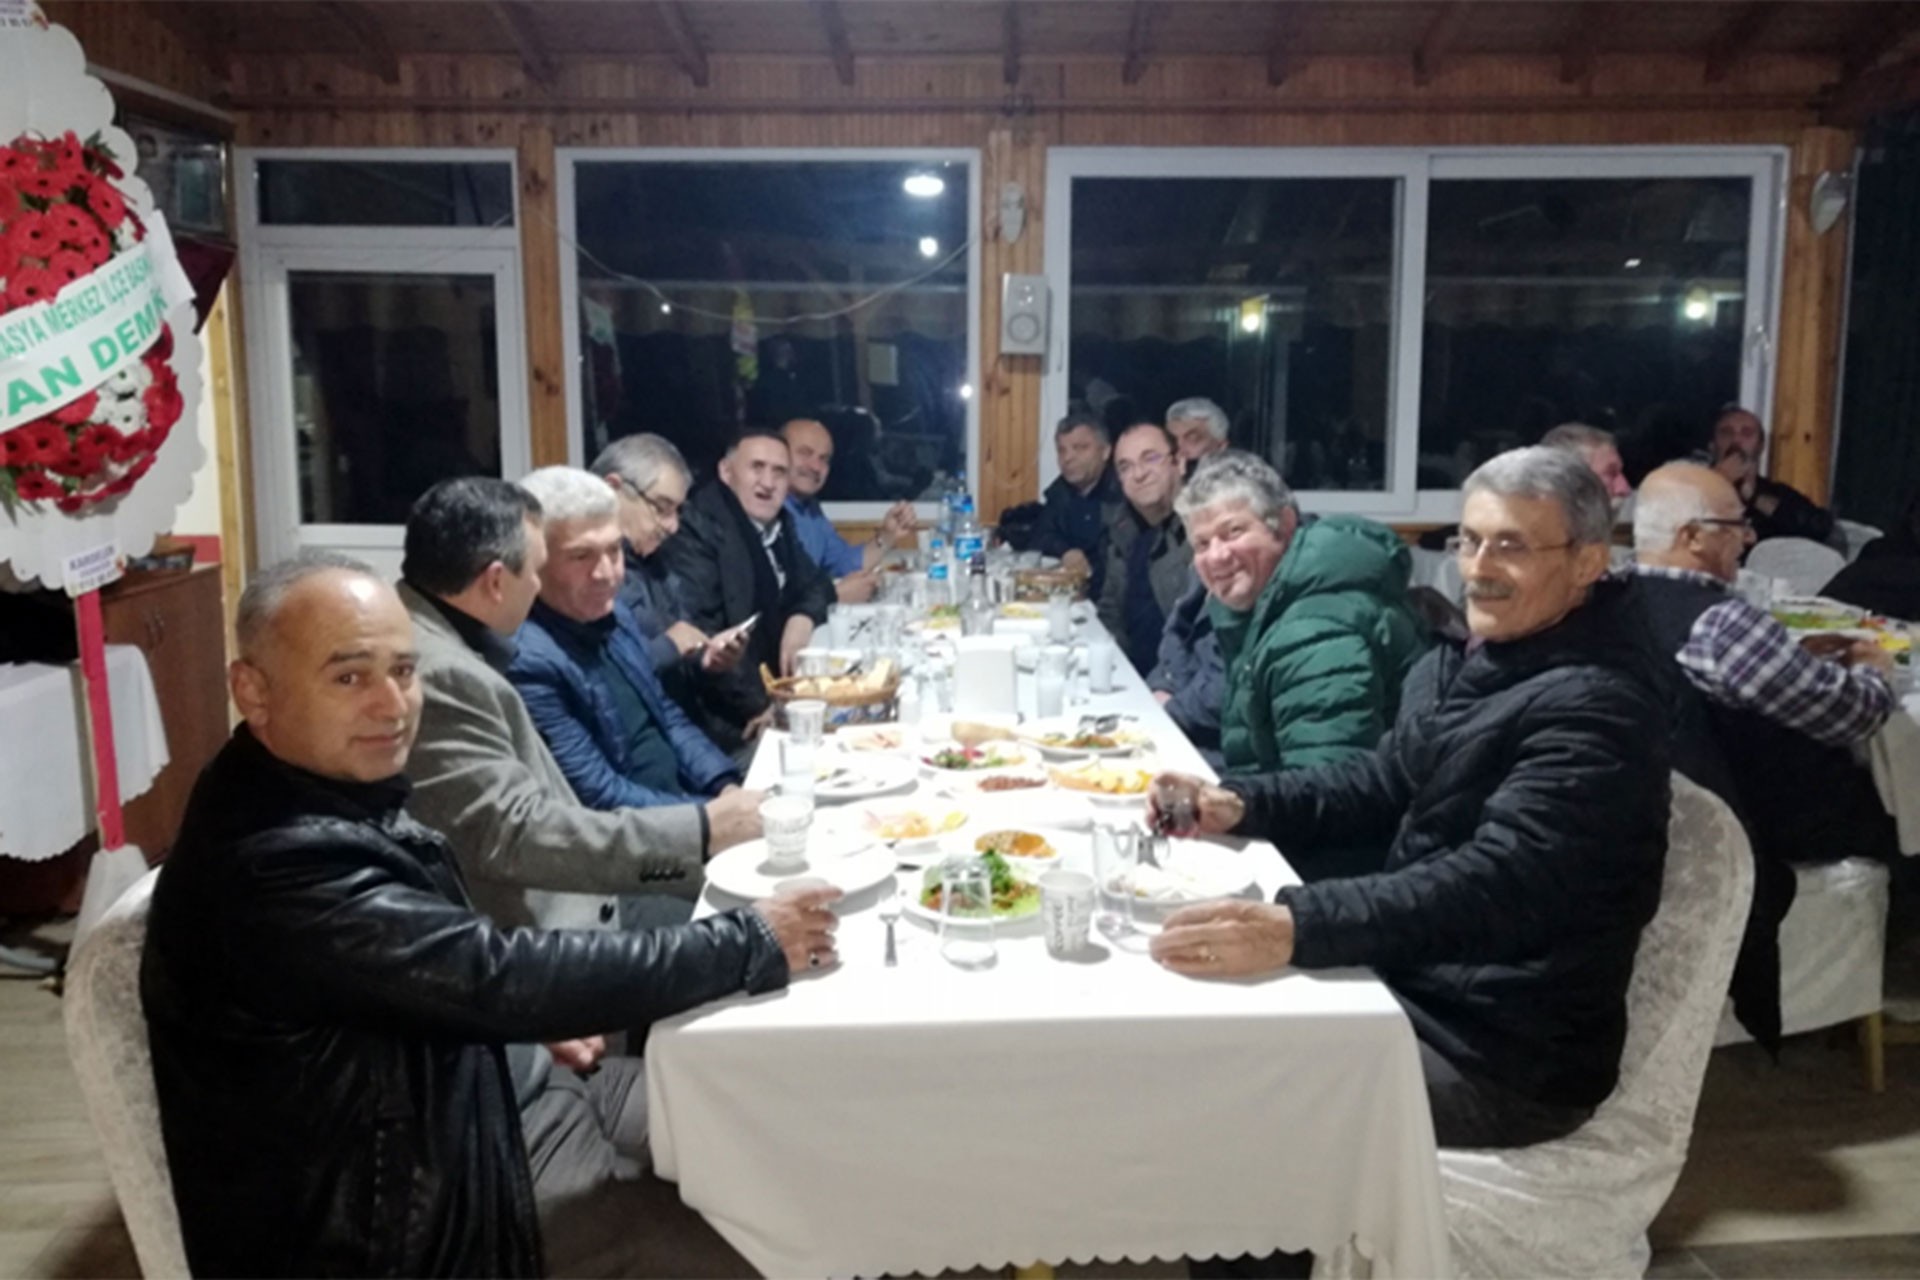 Amasya'da Evrensel ile dayanışma yemeği düzenlendi